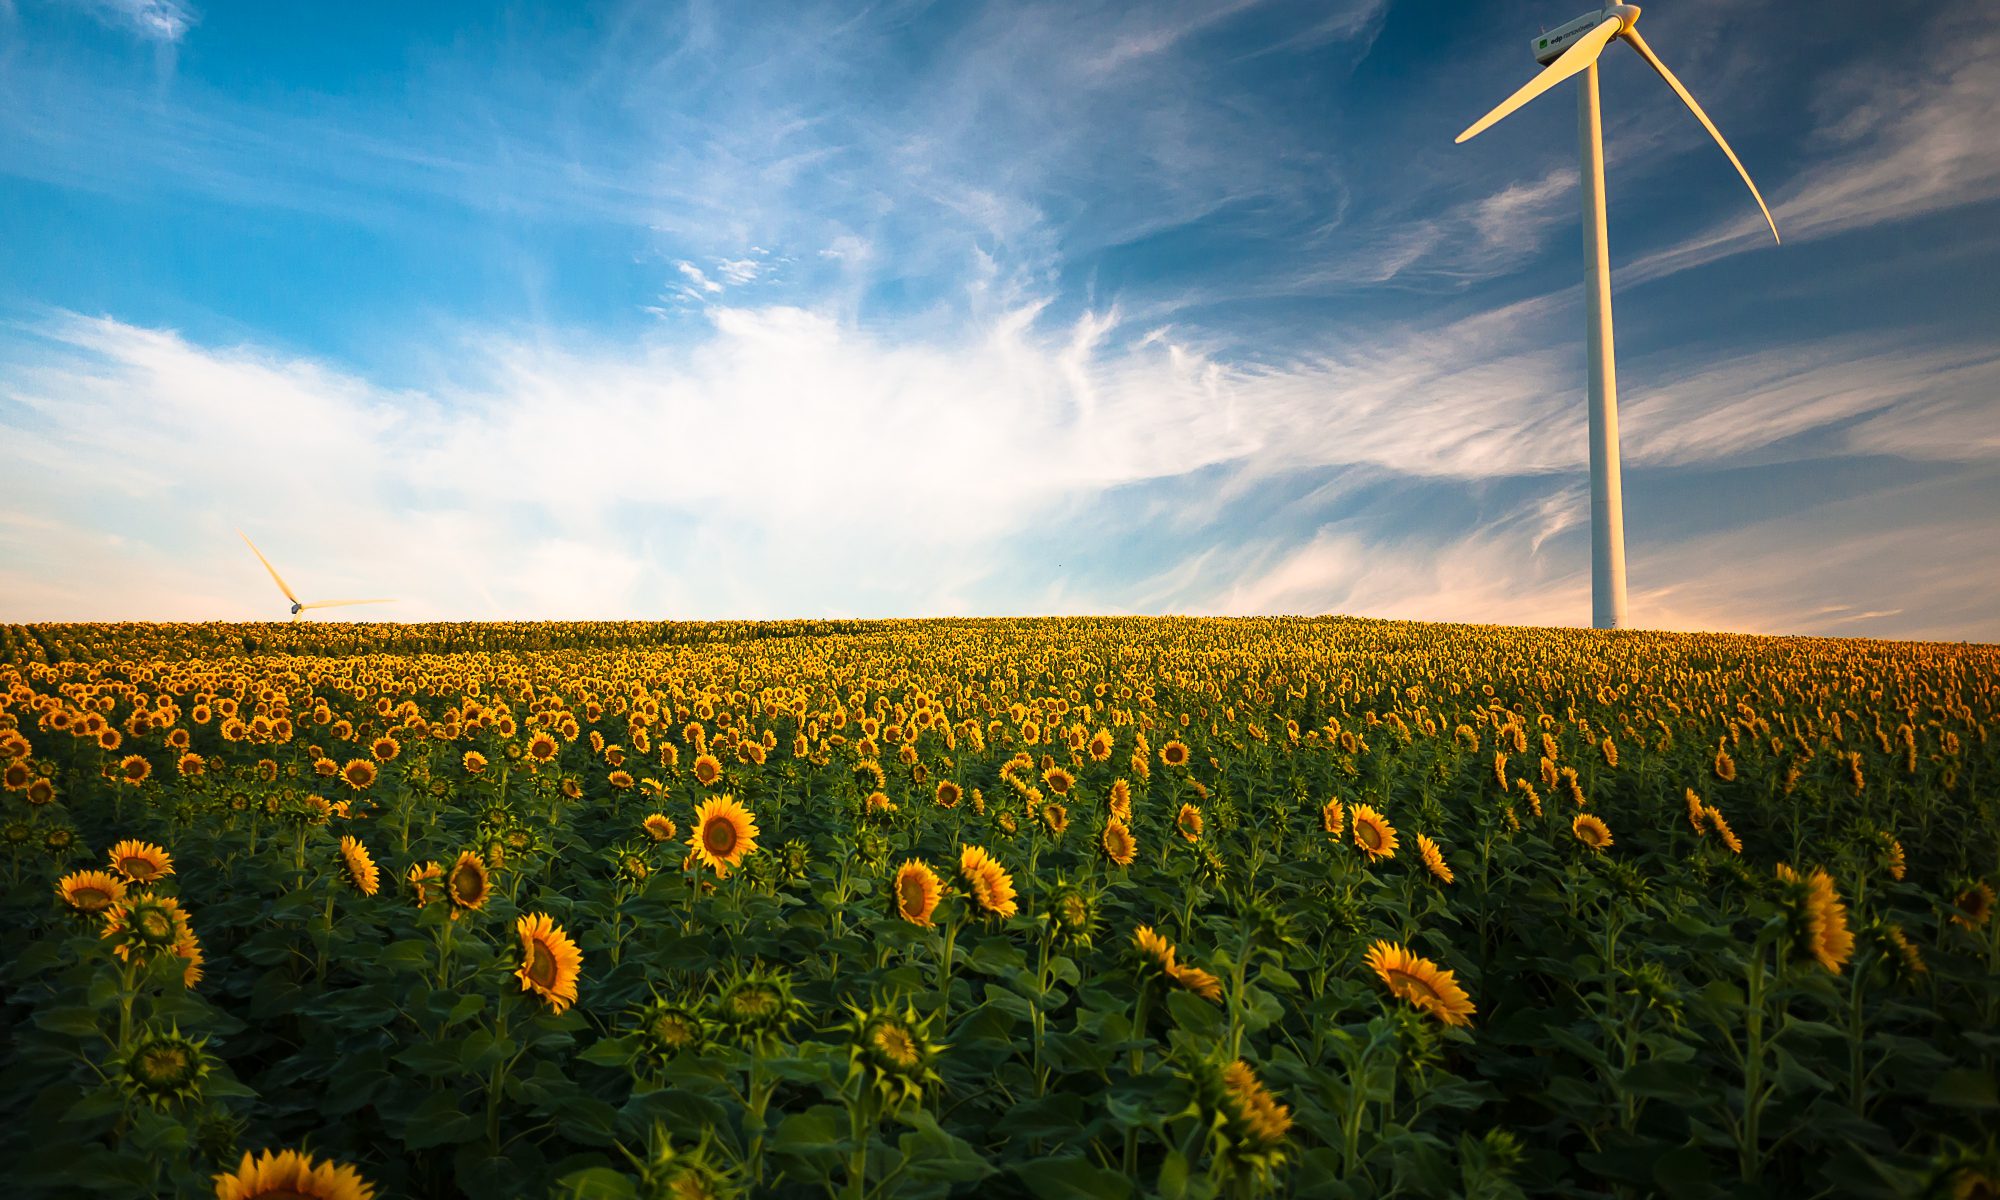 Ein Windrand an einem Sonnenblumenfeld. Quelle: unsplash